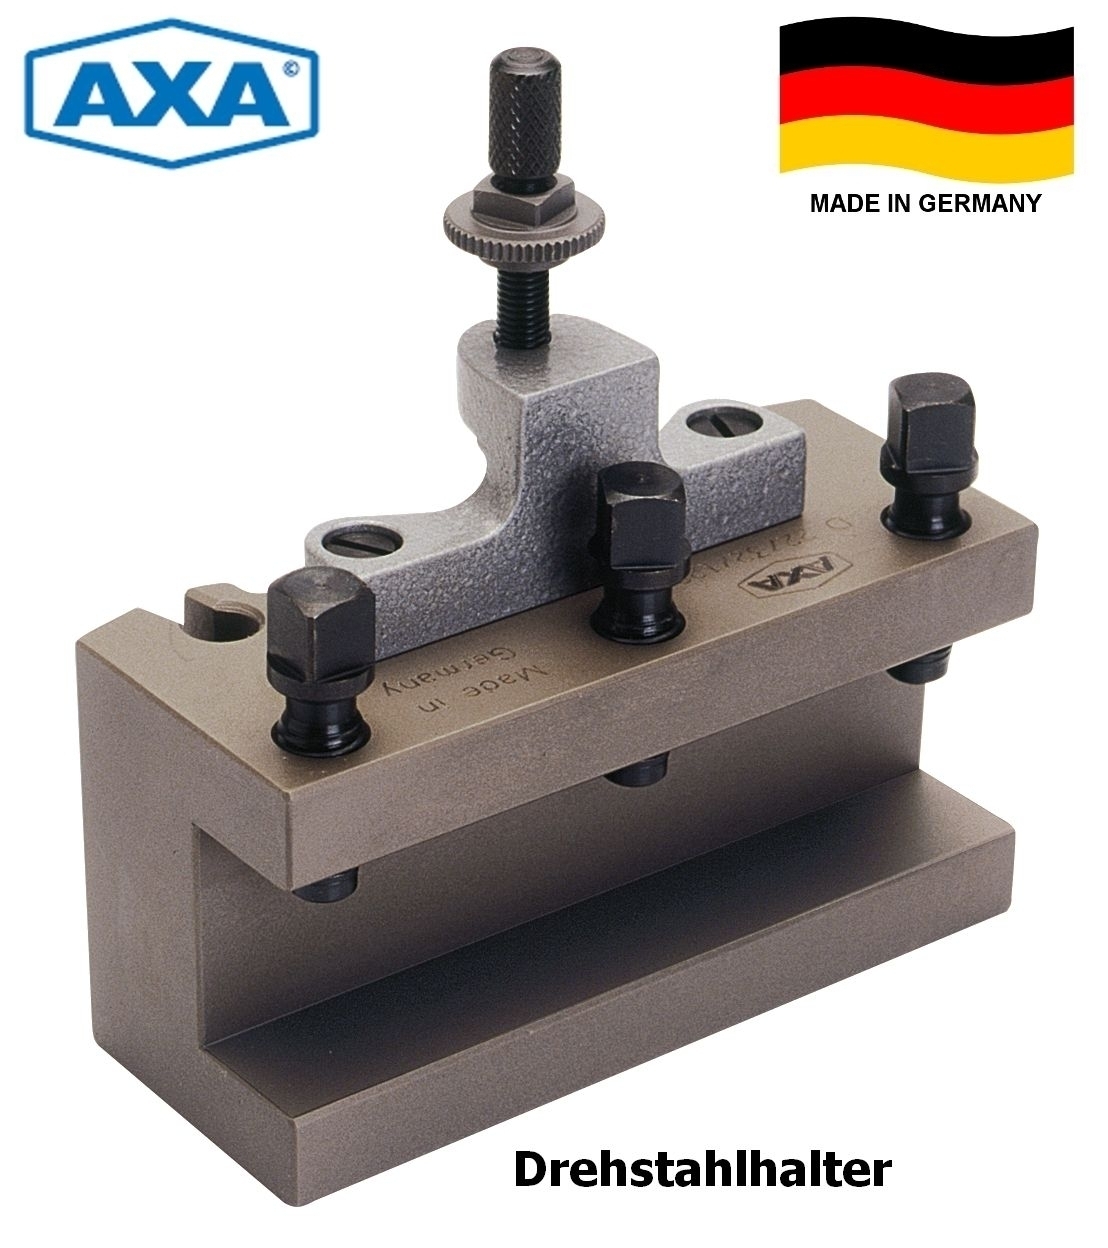 AXA Schnellwechsel-Drehstahlhalter AaD 1250 | D00/12/50